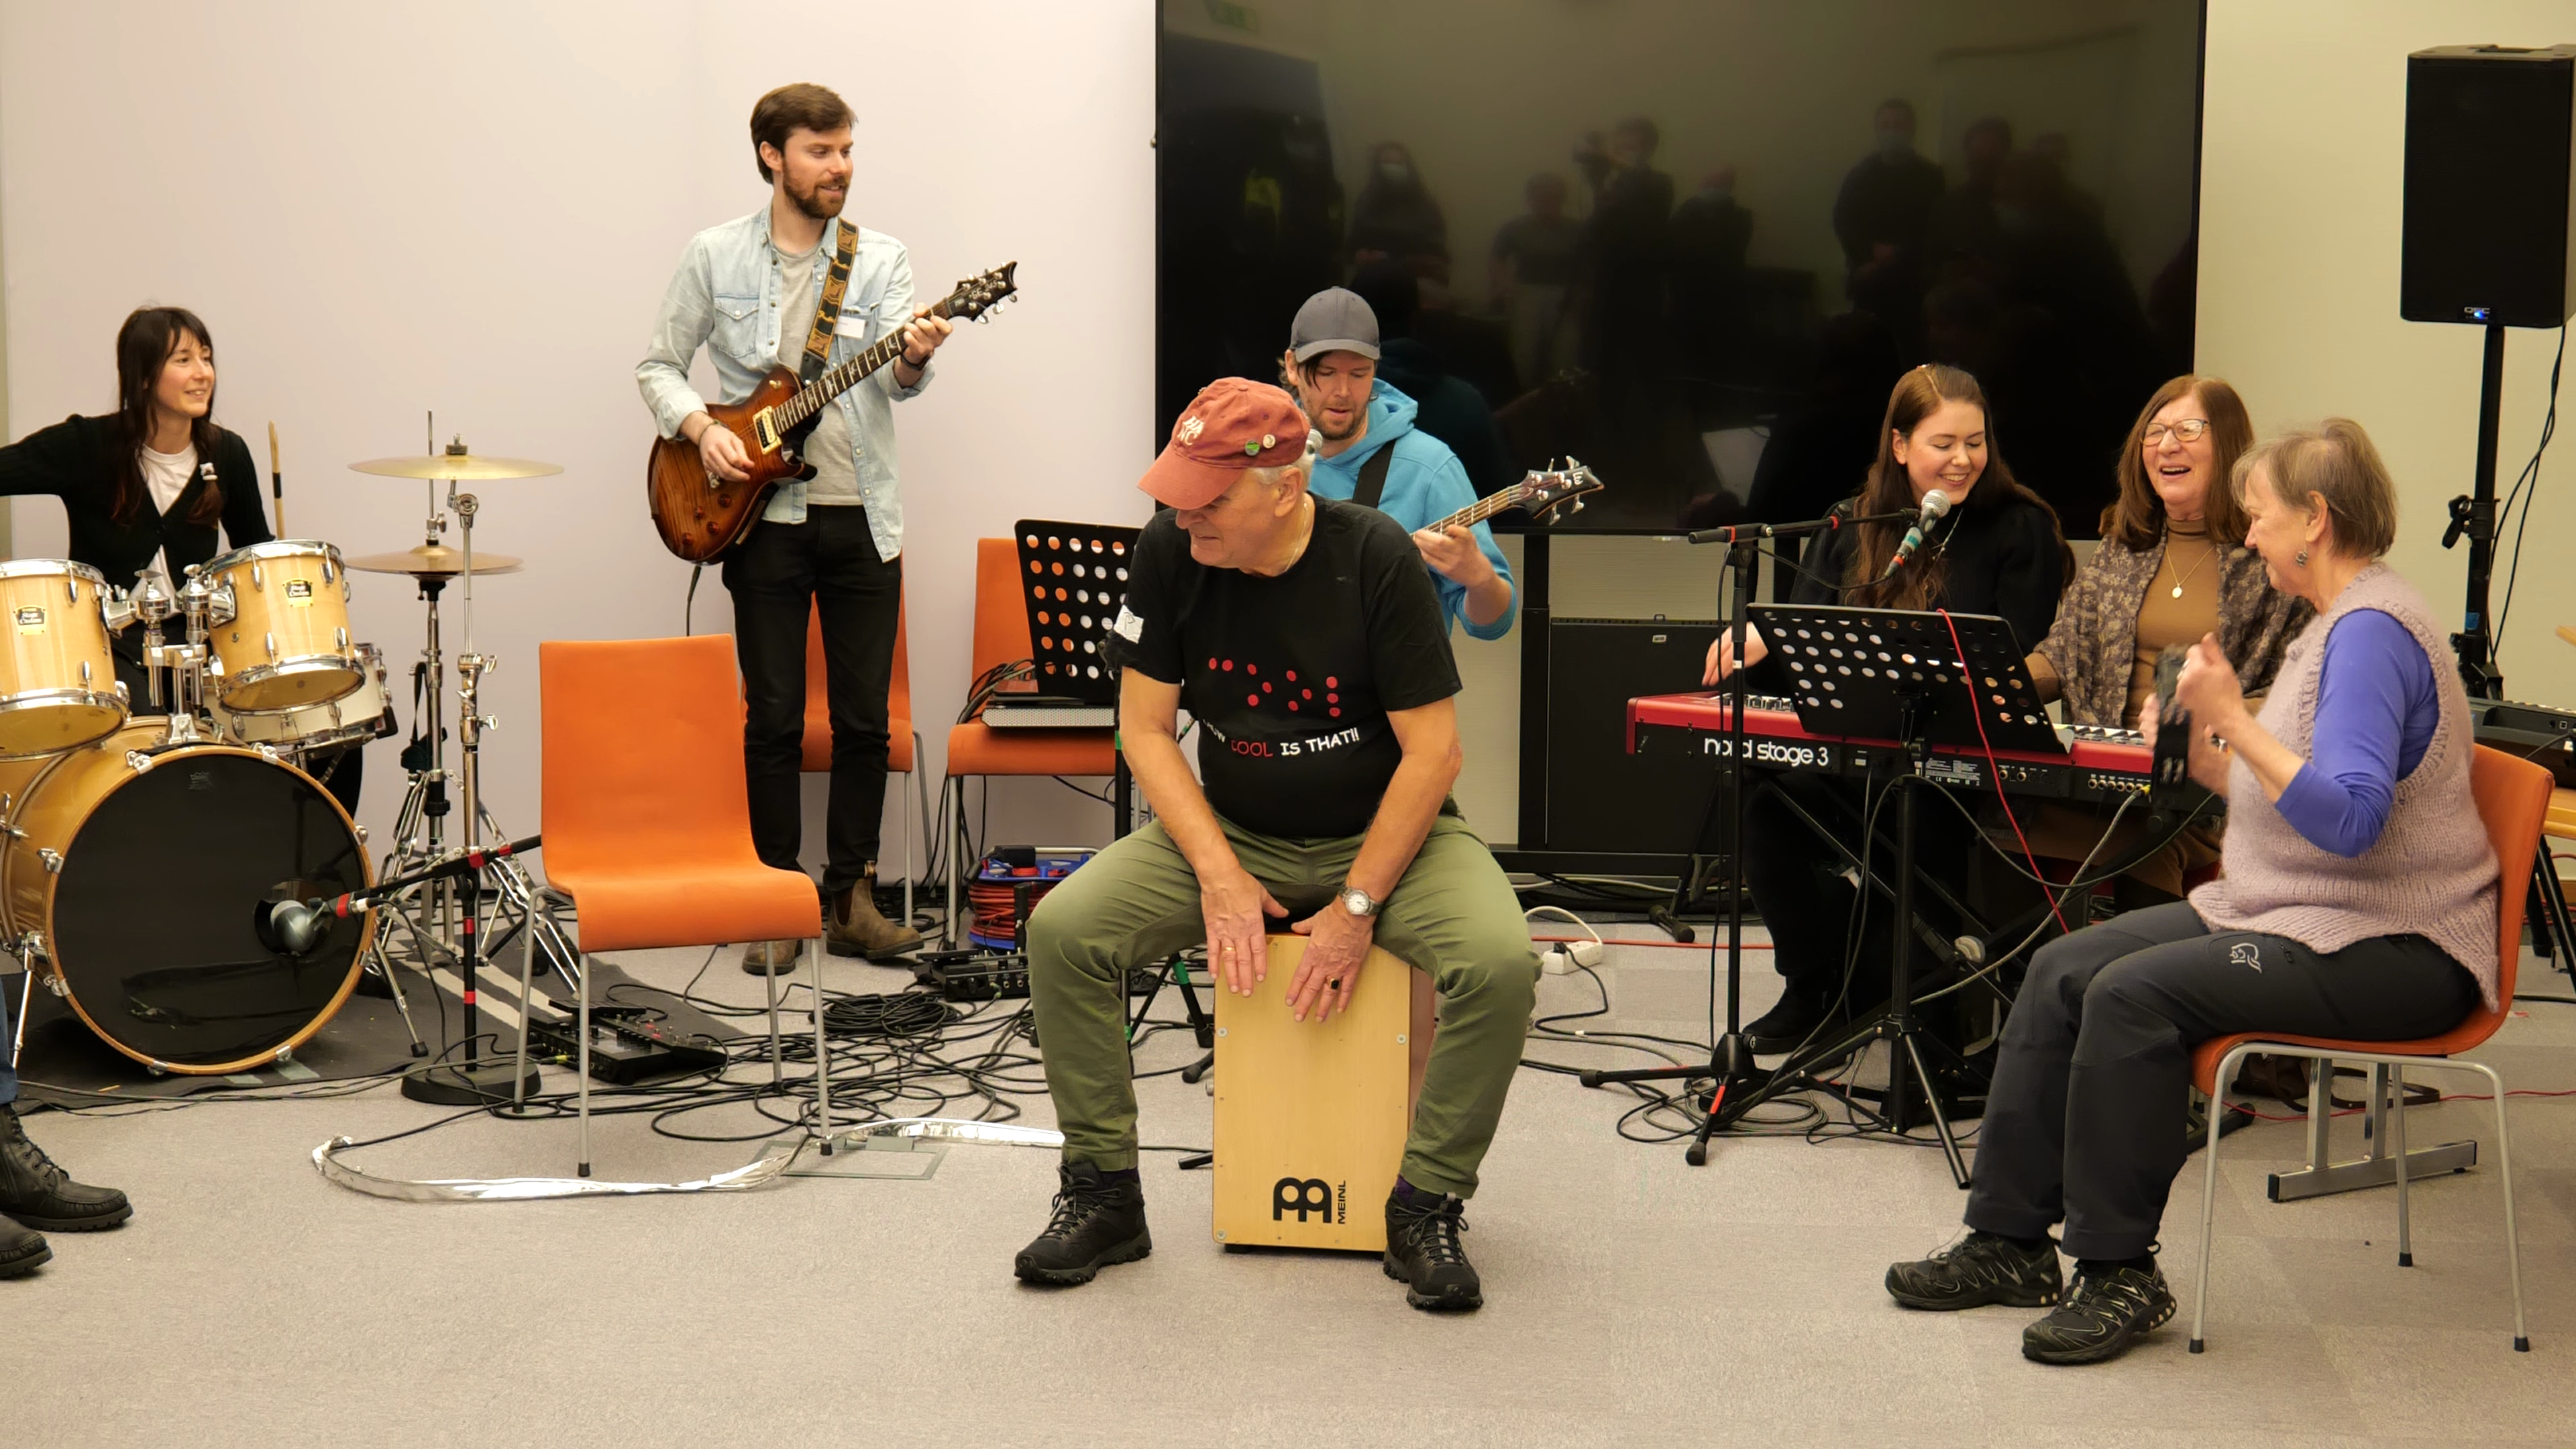 Et band med flere musikere, i front en person som spiller en håndtromme.